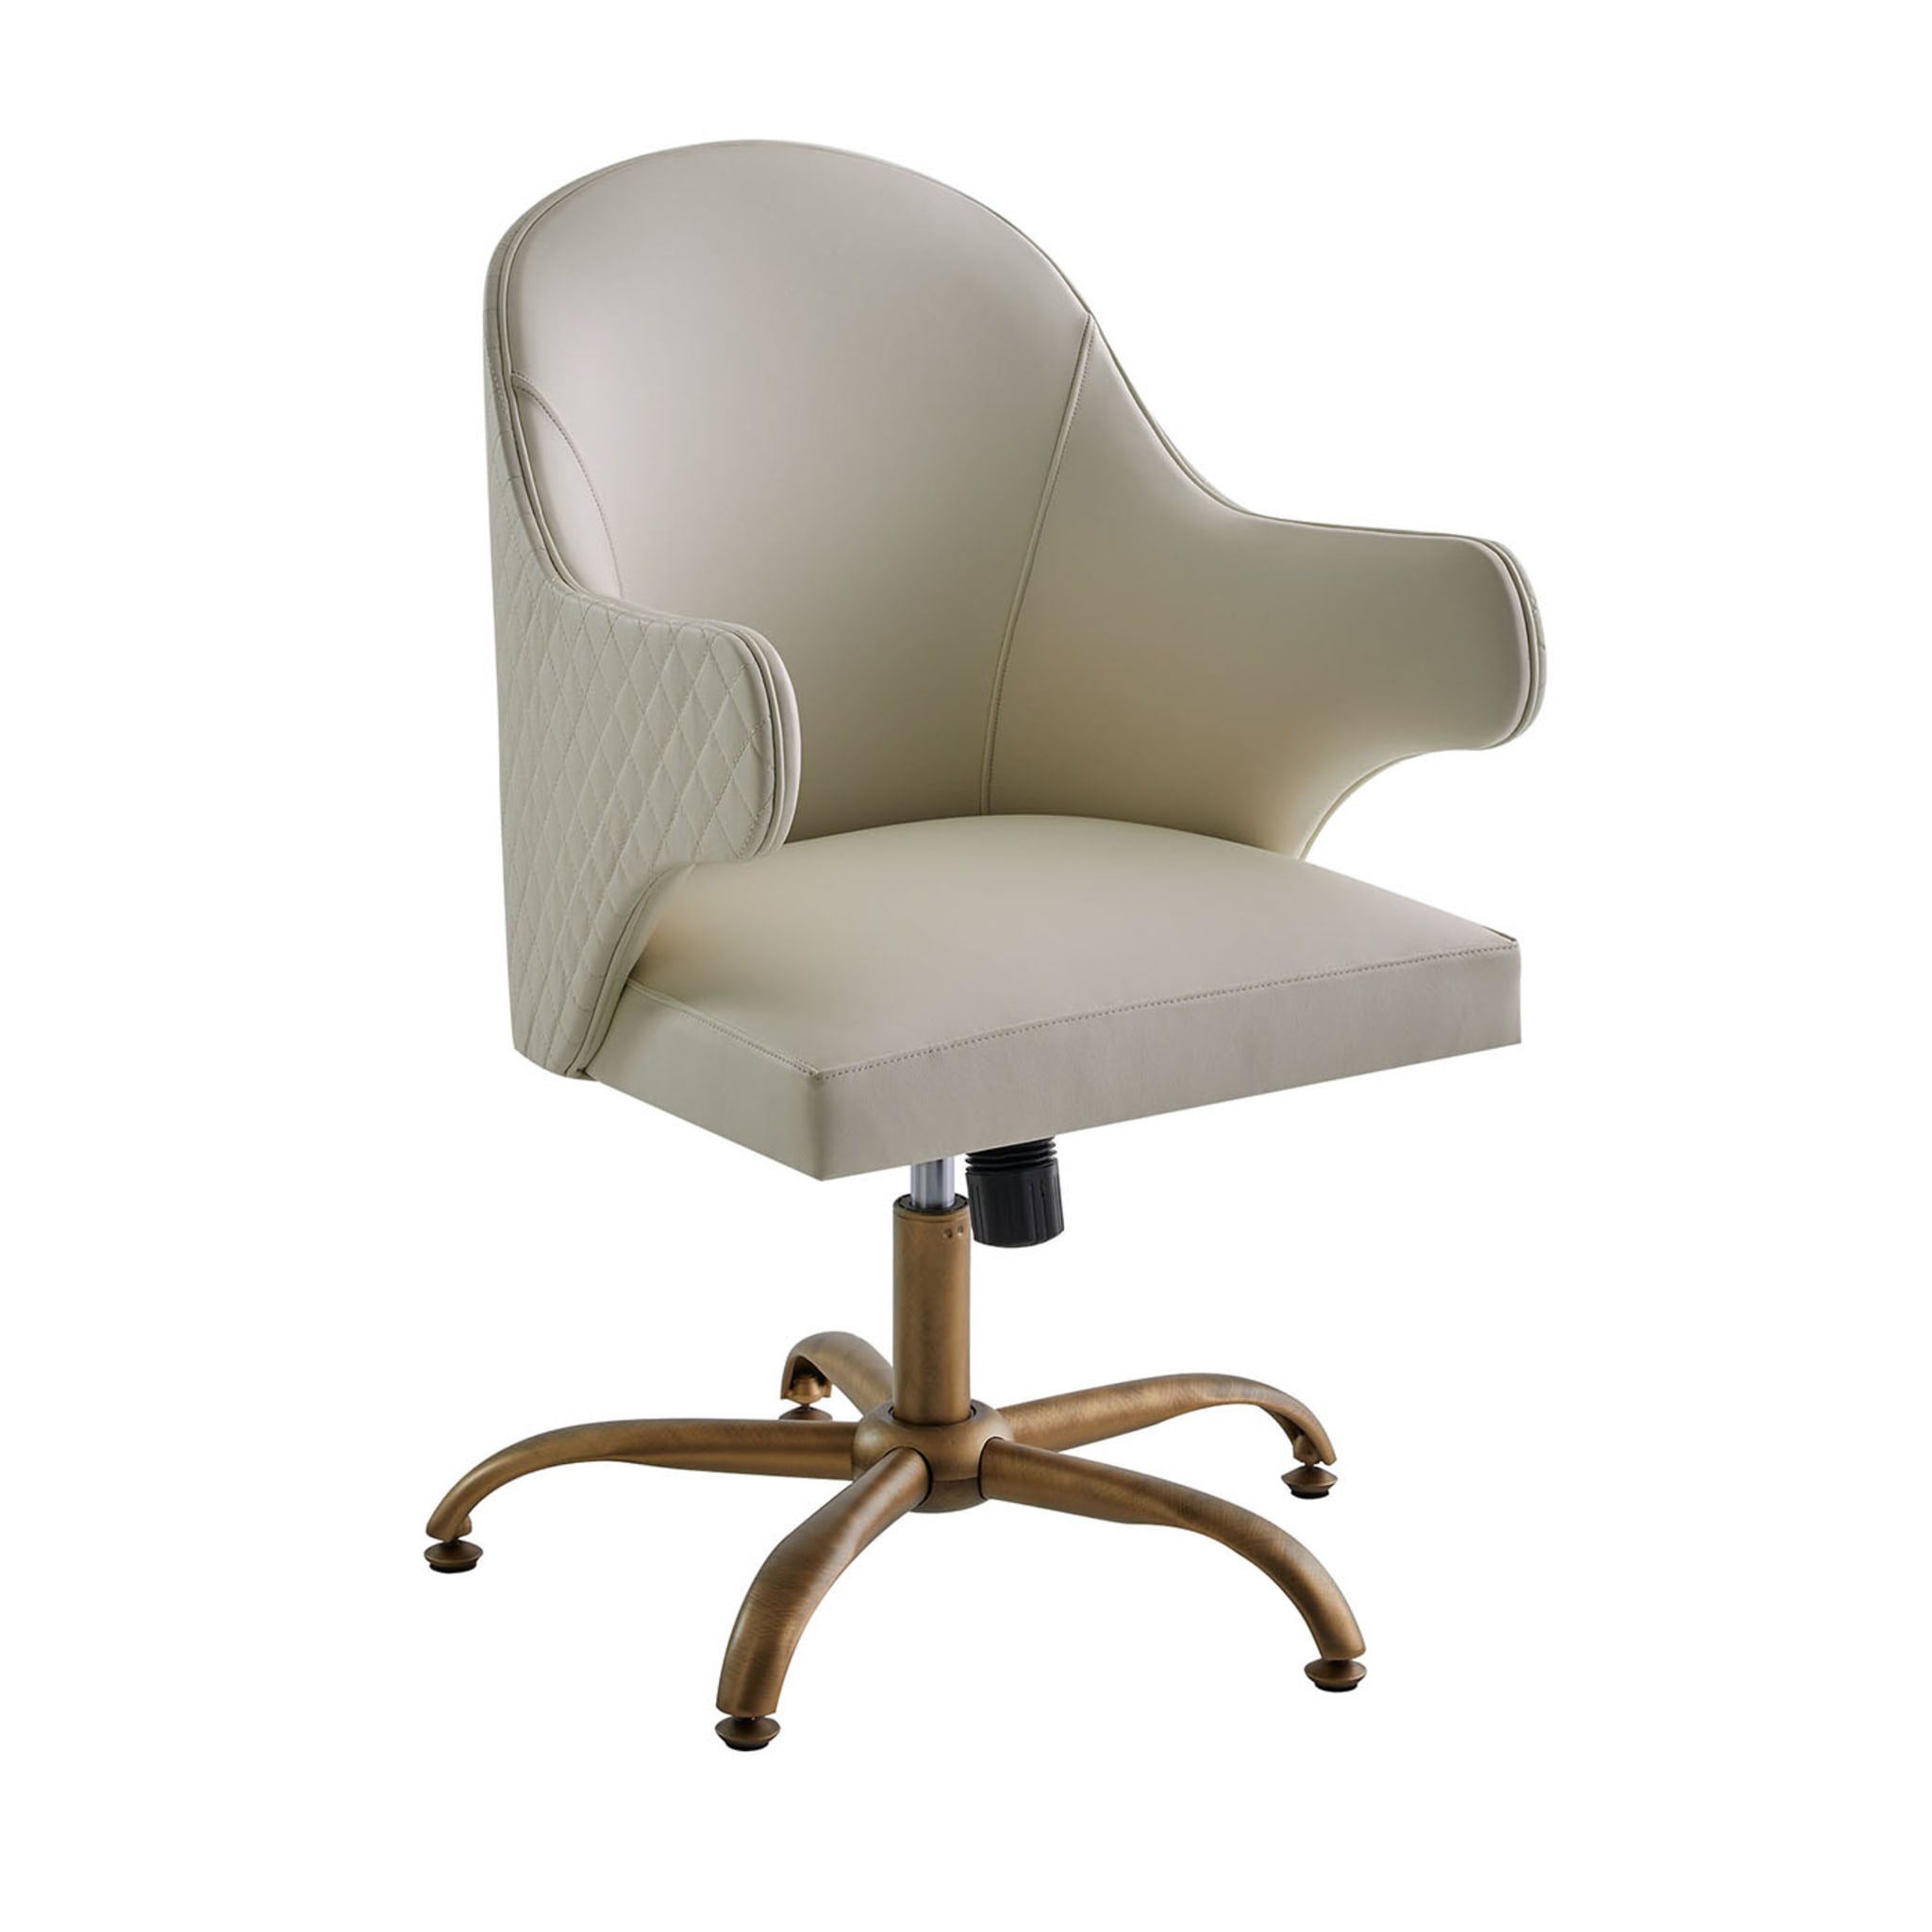 Soft White Swivel Chair - Main view